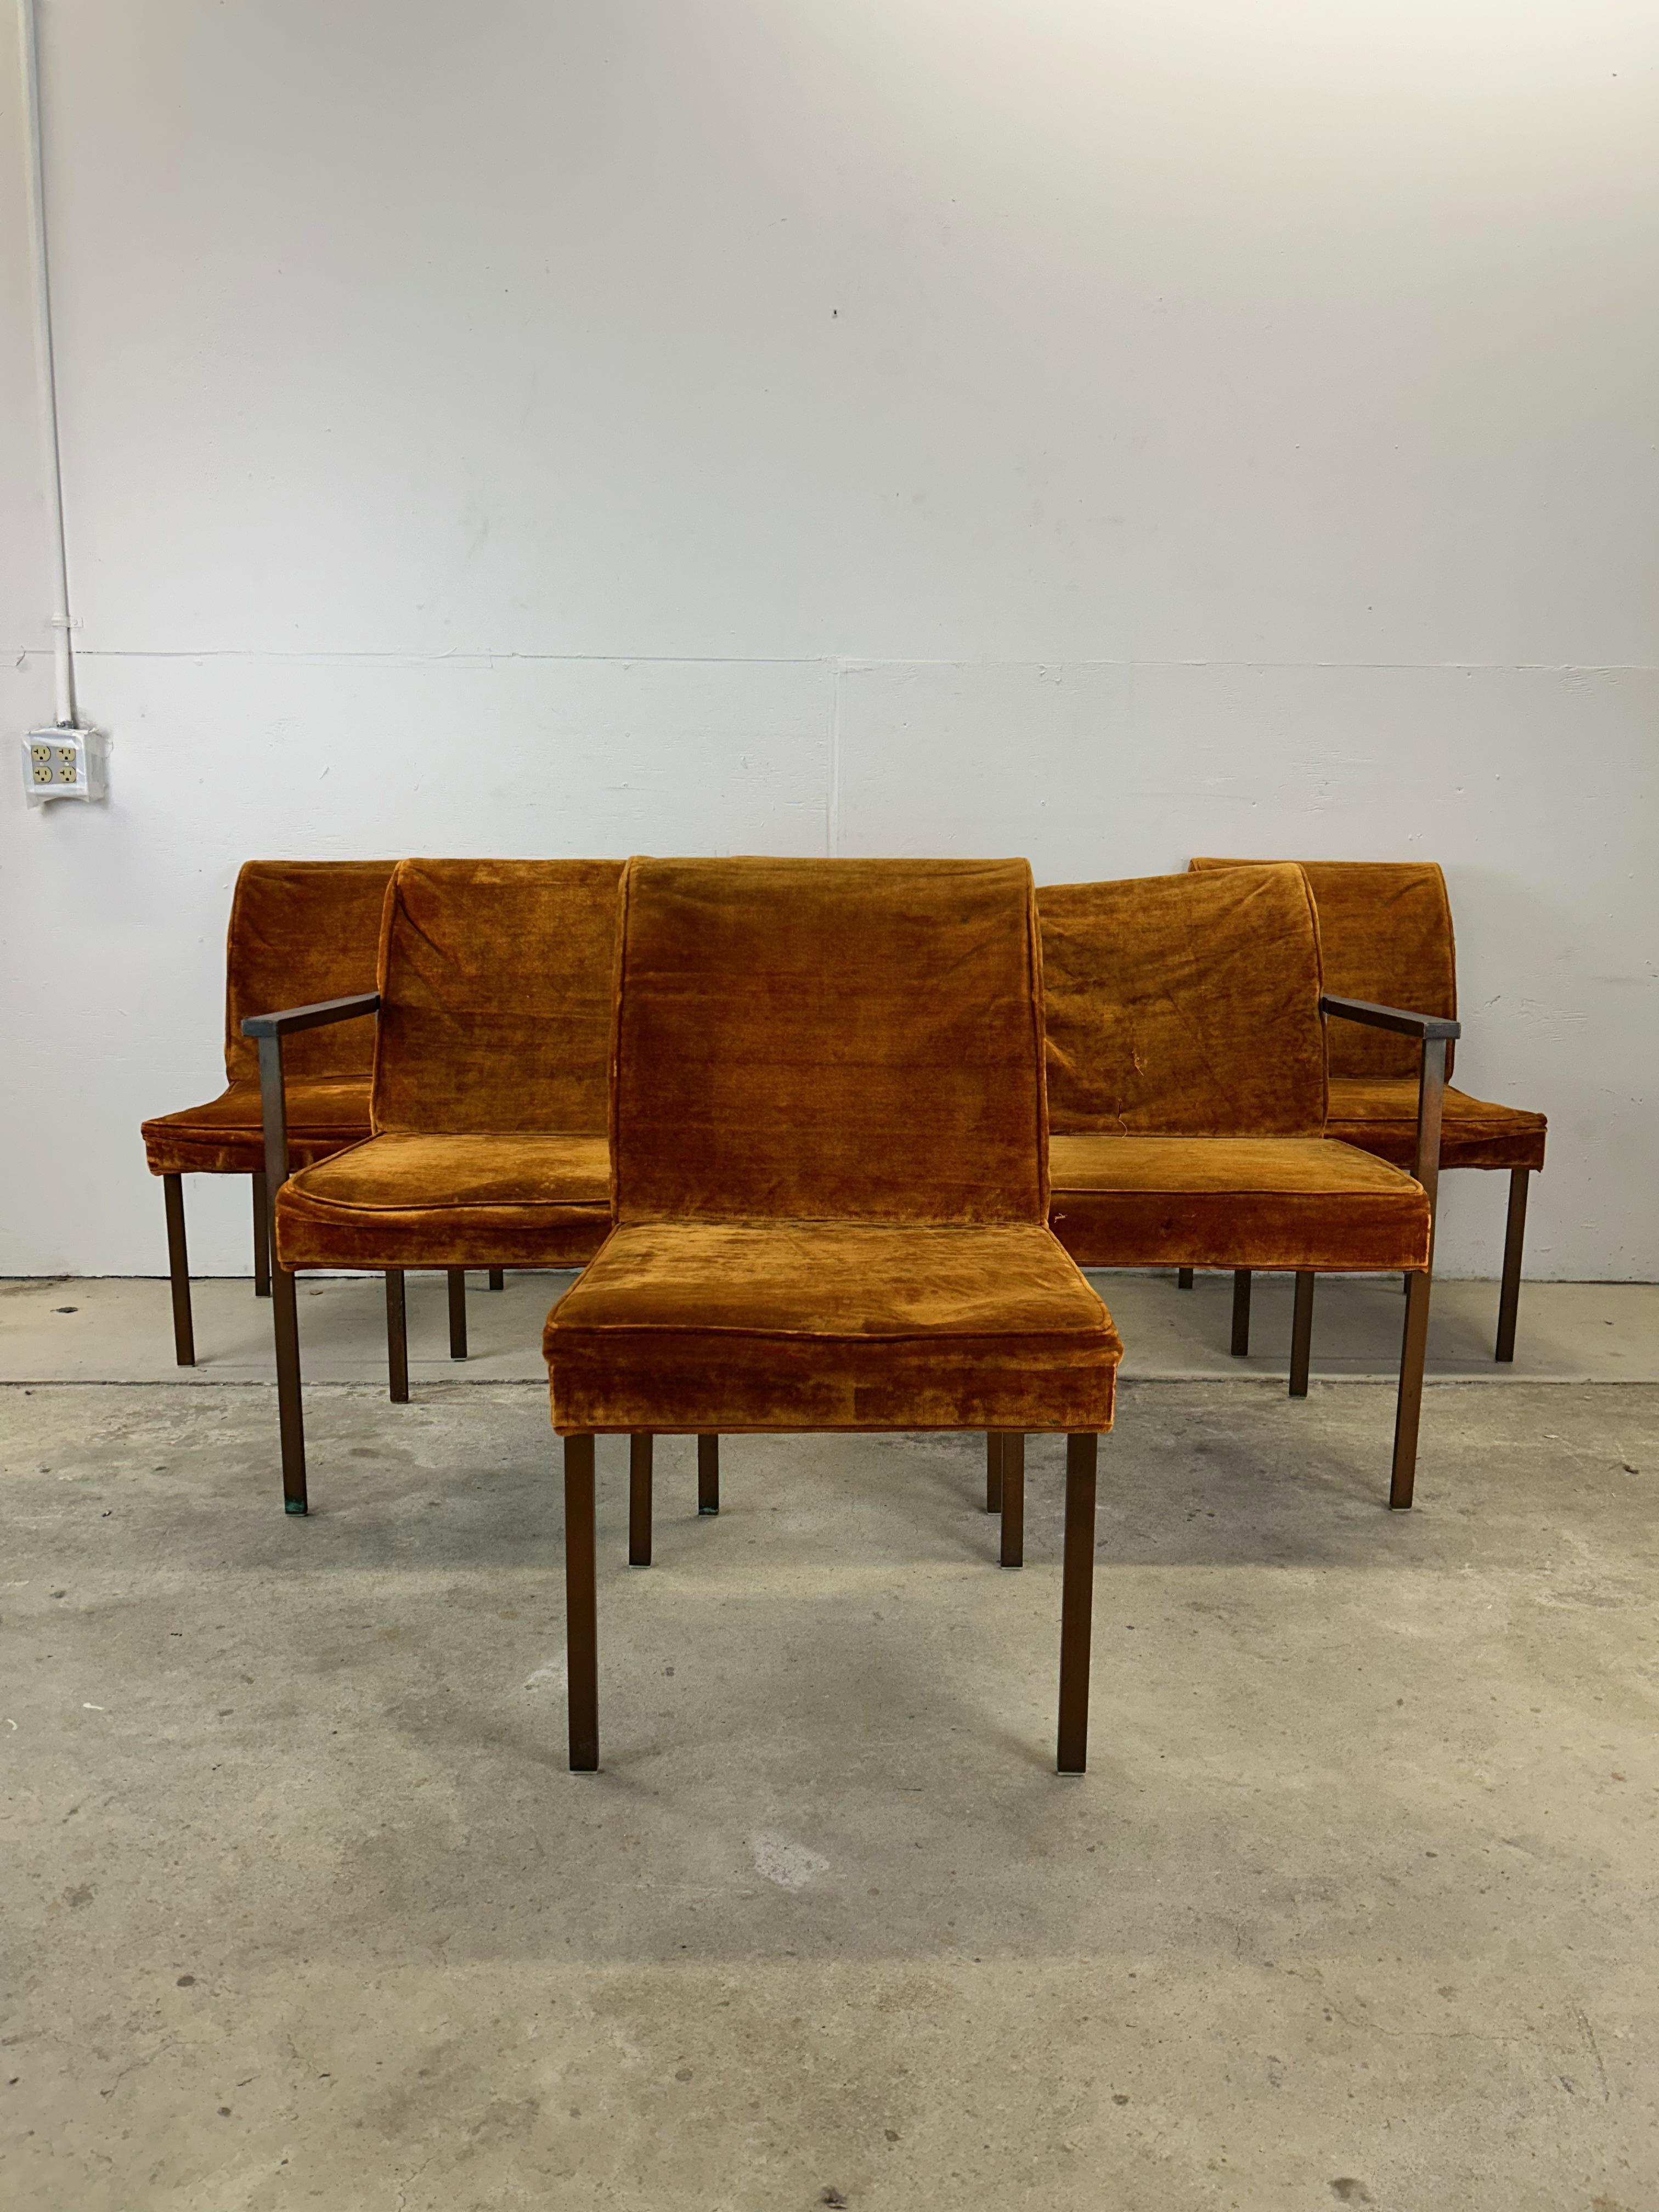 Cet ensemble de six chaises de salle à manger du milieu du siècle par Lane Furniture présente un revêtement vintage orange brûlé, un cadre en métal et des accoudoirs en noyer massif.

Dimensions : 23w 21d 33h 17sh 25.5ah

Condit : Cet ensemble de